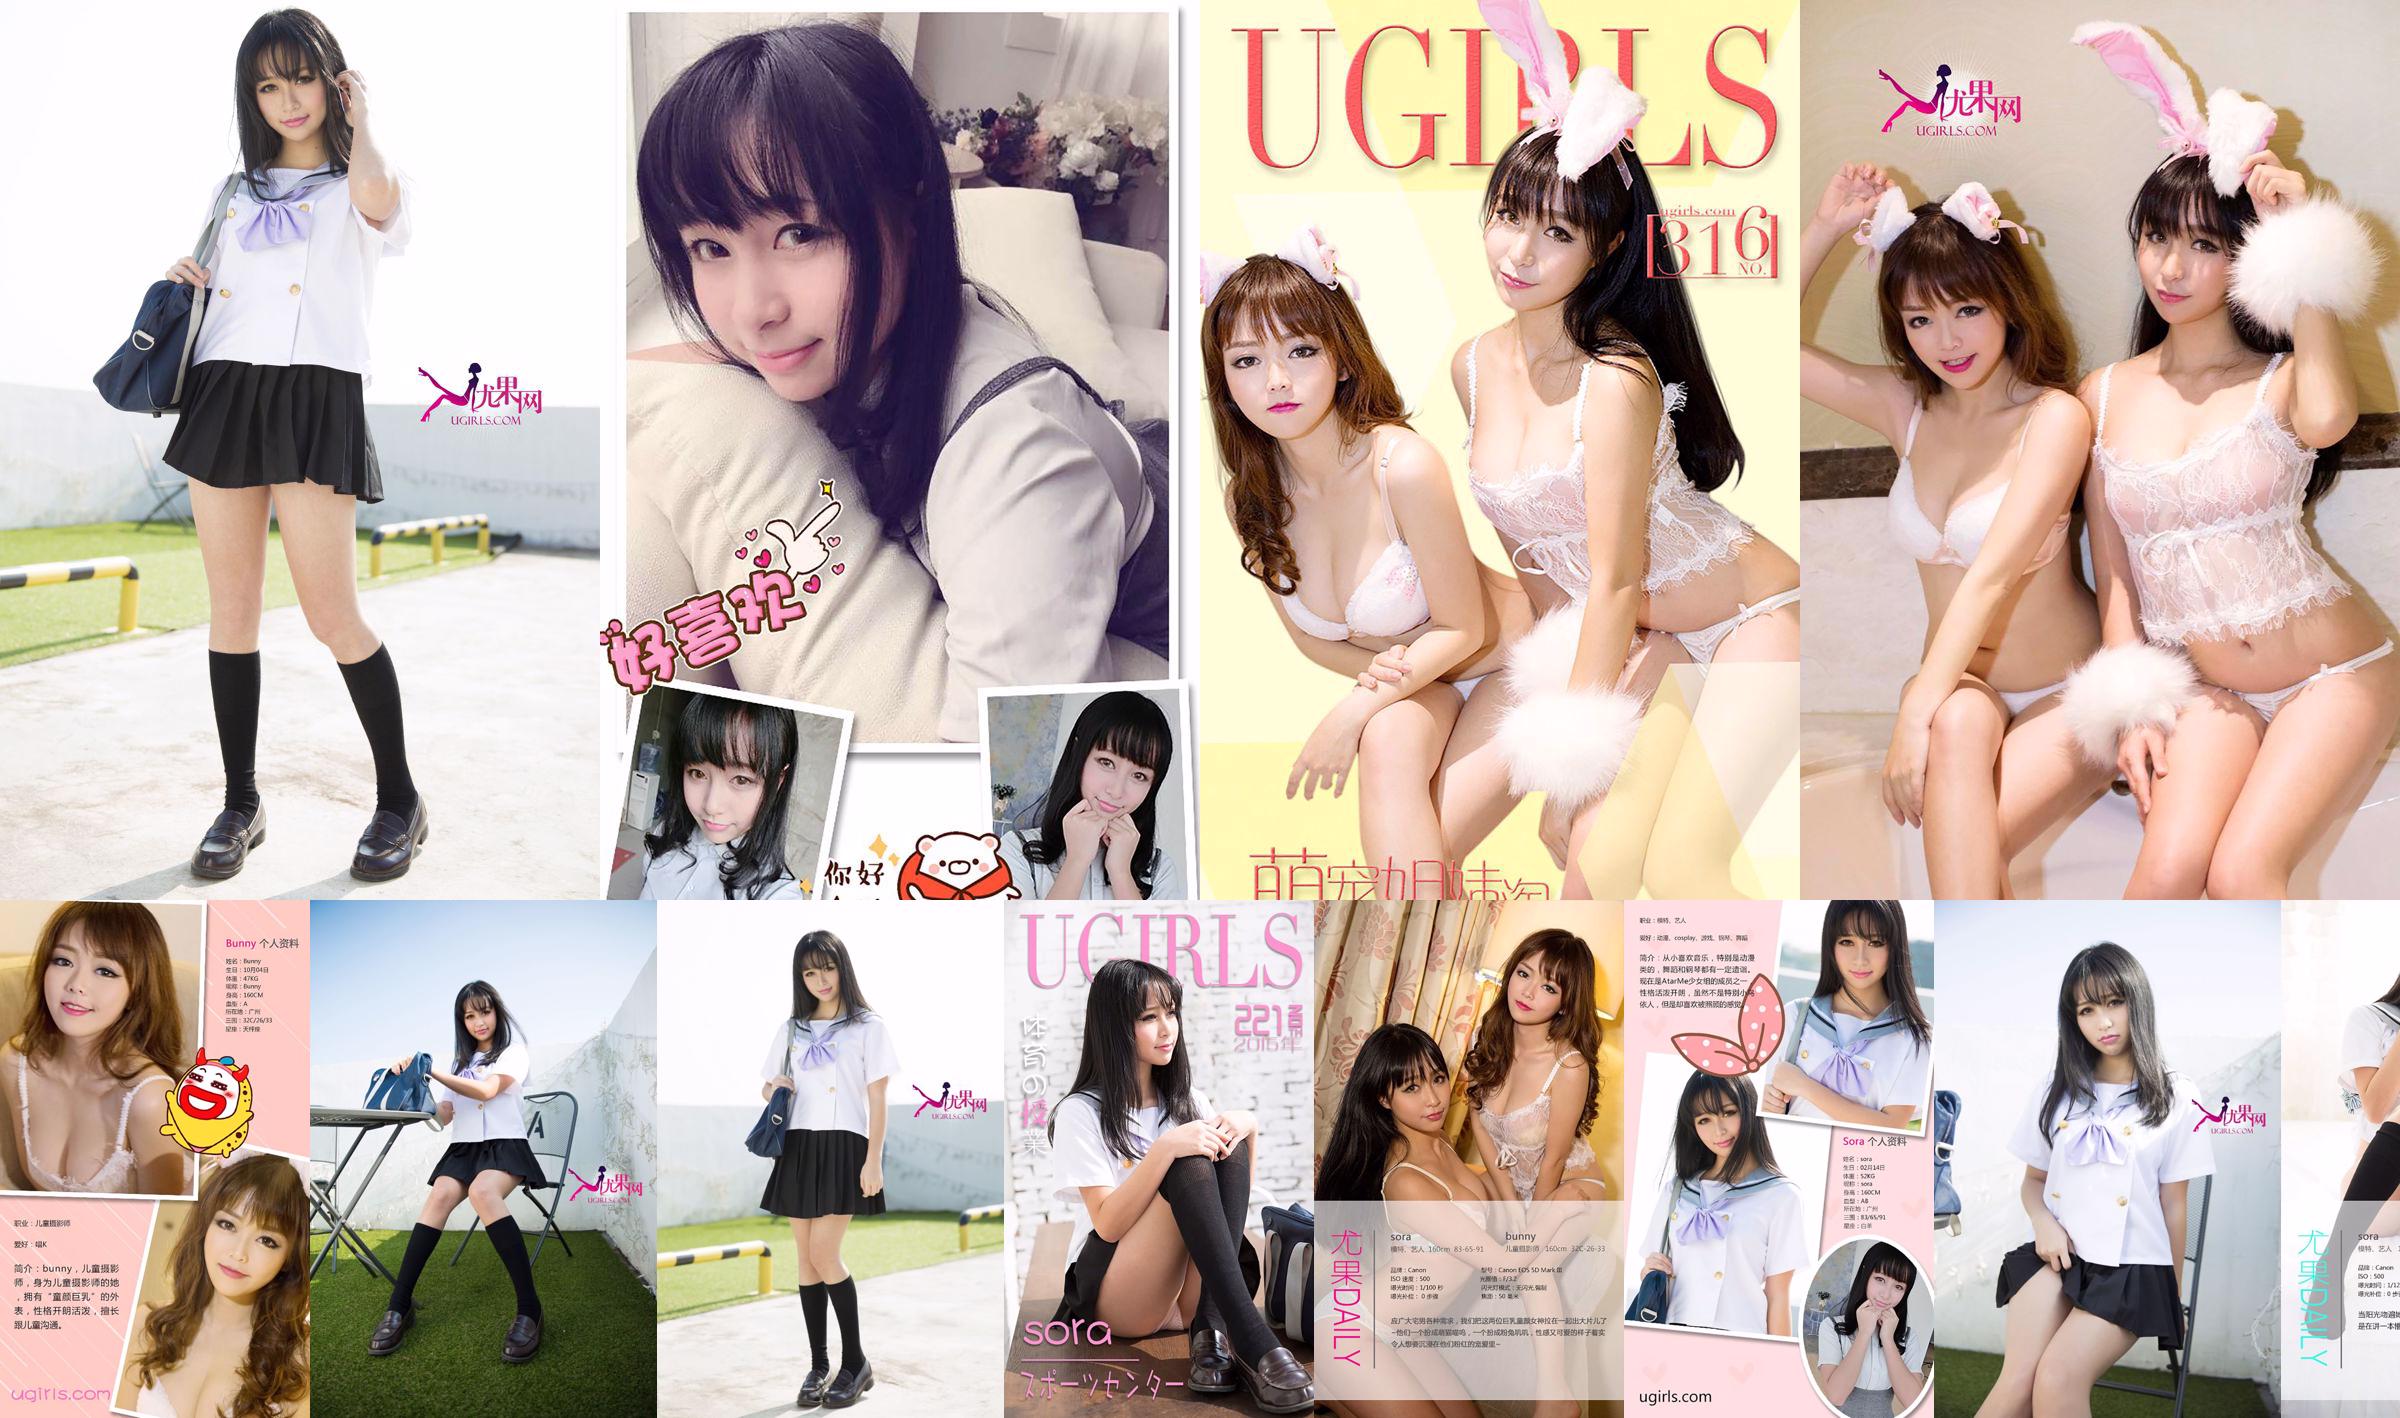 Sora & Bunny "Cute Pet Sisters Amoy" [爱 优 物 Ugirls] No.316 No.33921e Página 1